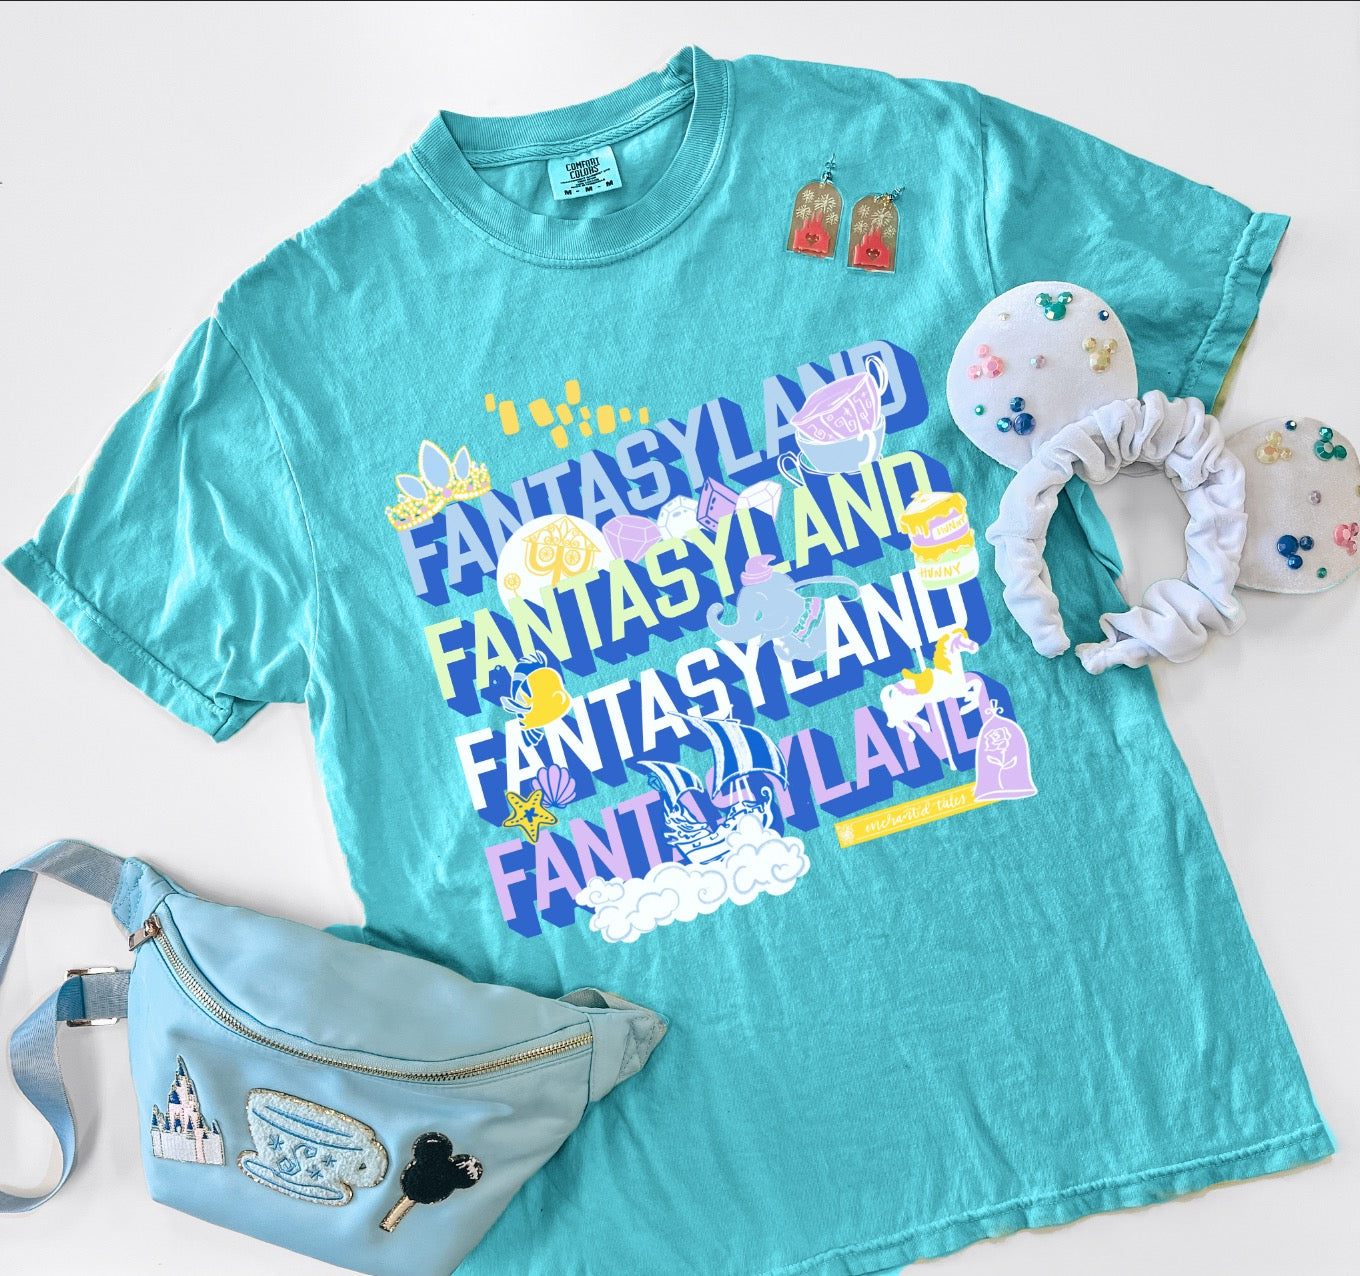 Fantasyland Tee - 2 Colors